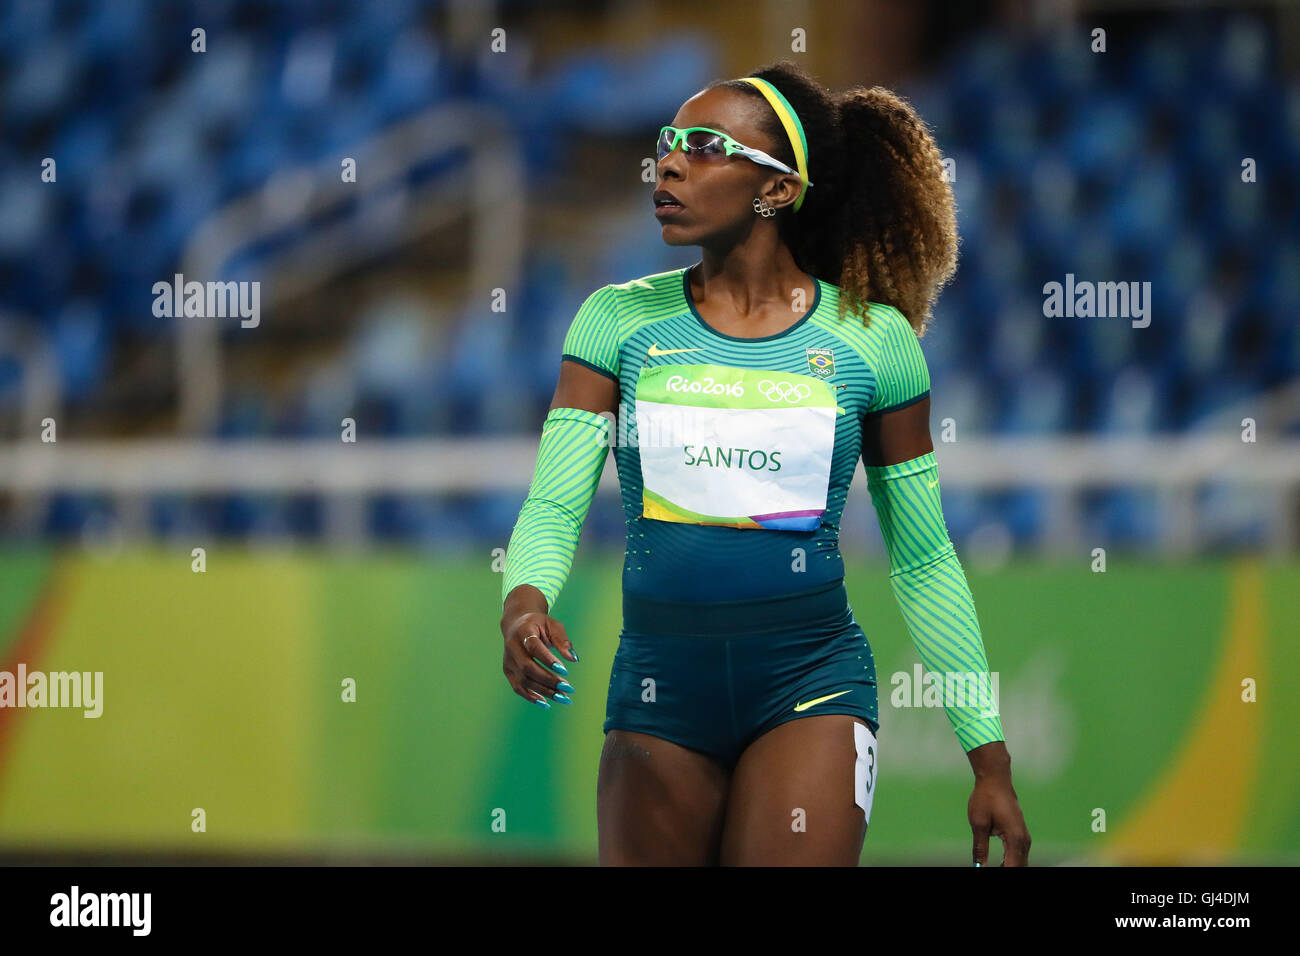 Río de Janeiro, Brasil 12 Aug, 2016 RIO DE JANEIRO, RJ - 12.08.2016:  atletismo Rio 2016 - Rosangela Santos (BRA) en la carrera de 100m en los  Juegos Olímpicos Rio 2016 de